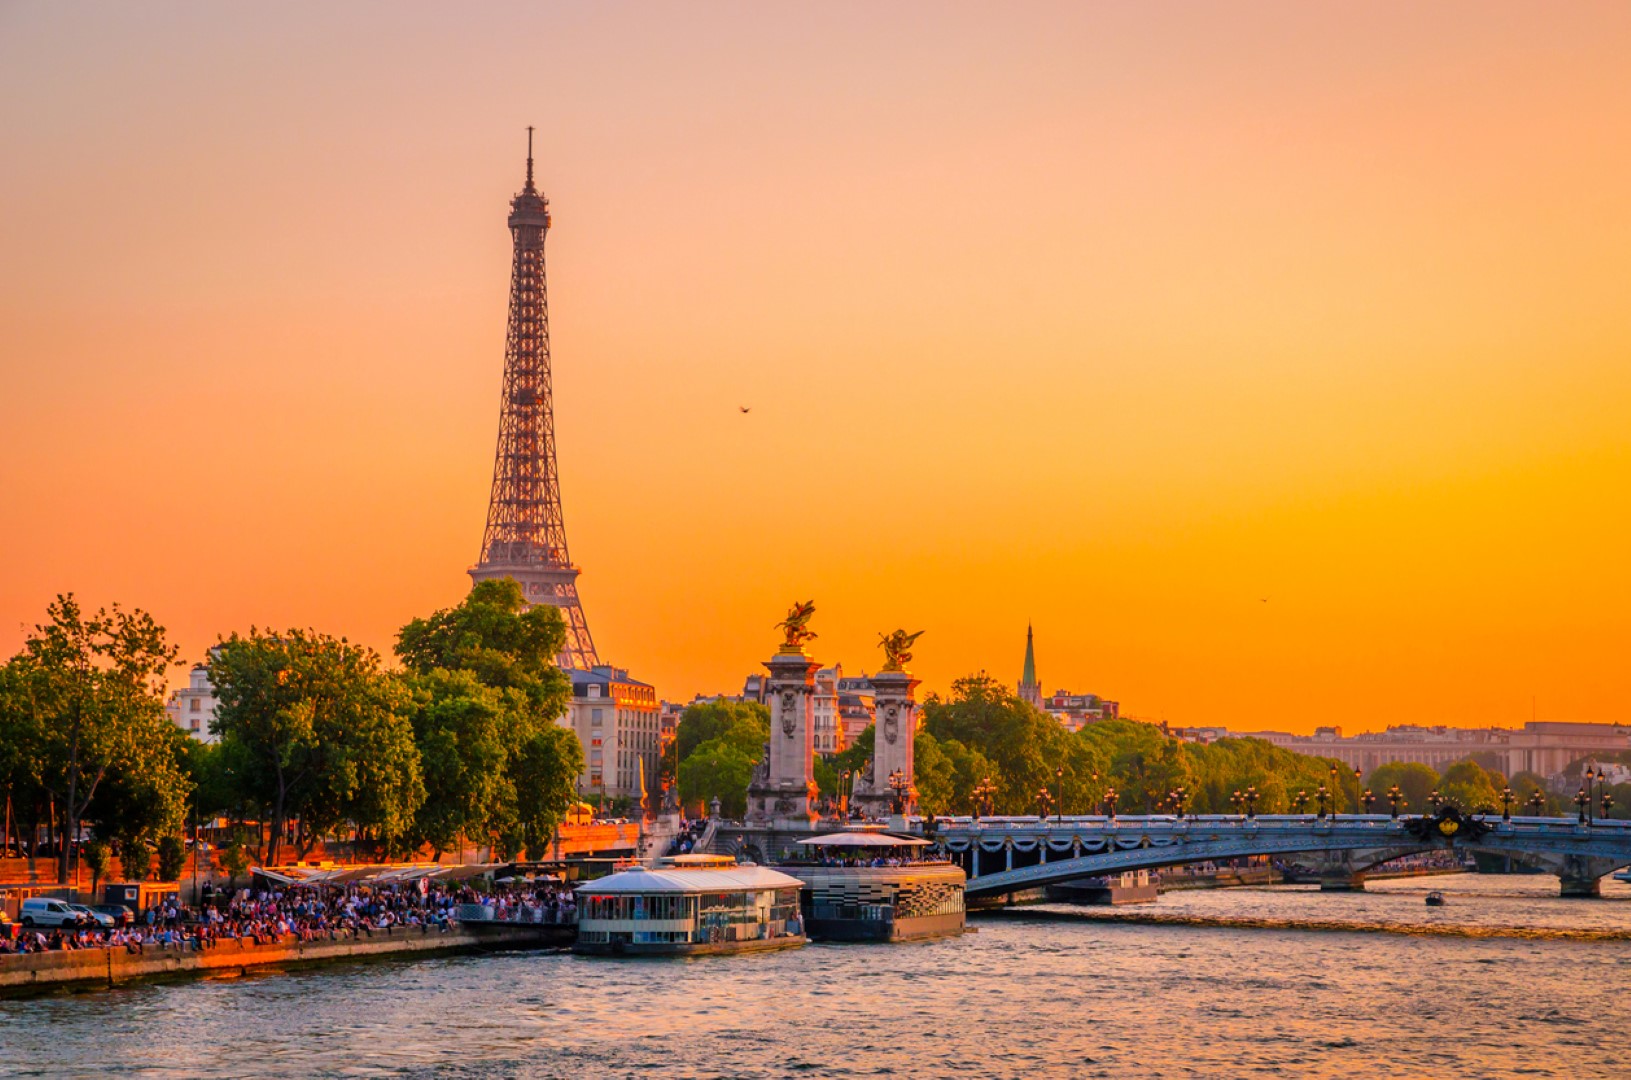 През 2020 г.: Париж прие 33 милиона туристи по-малко